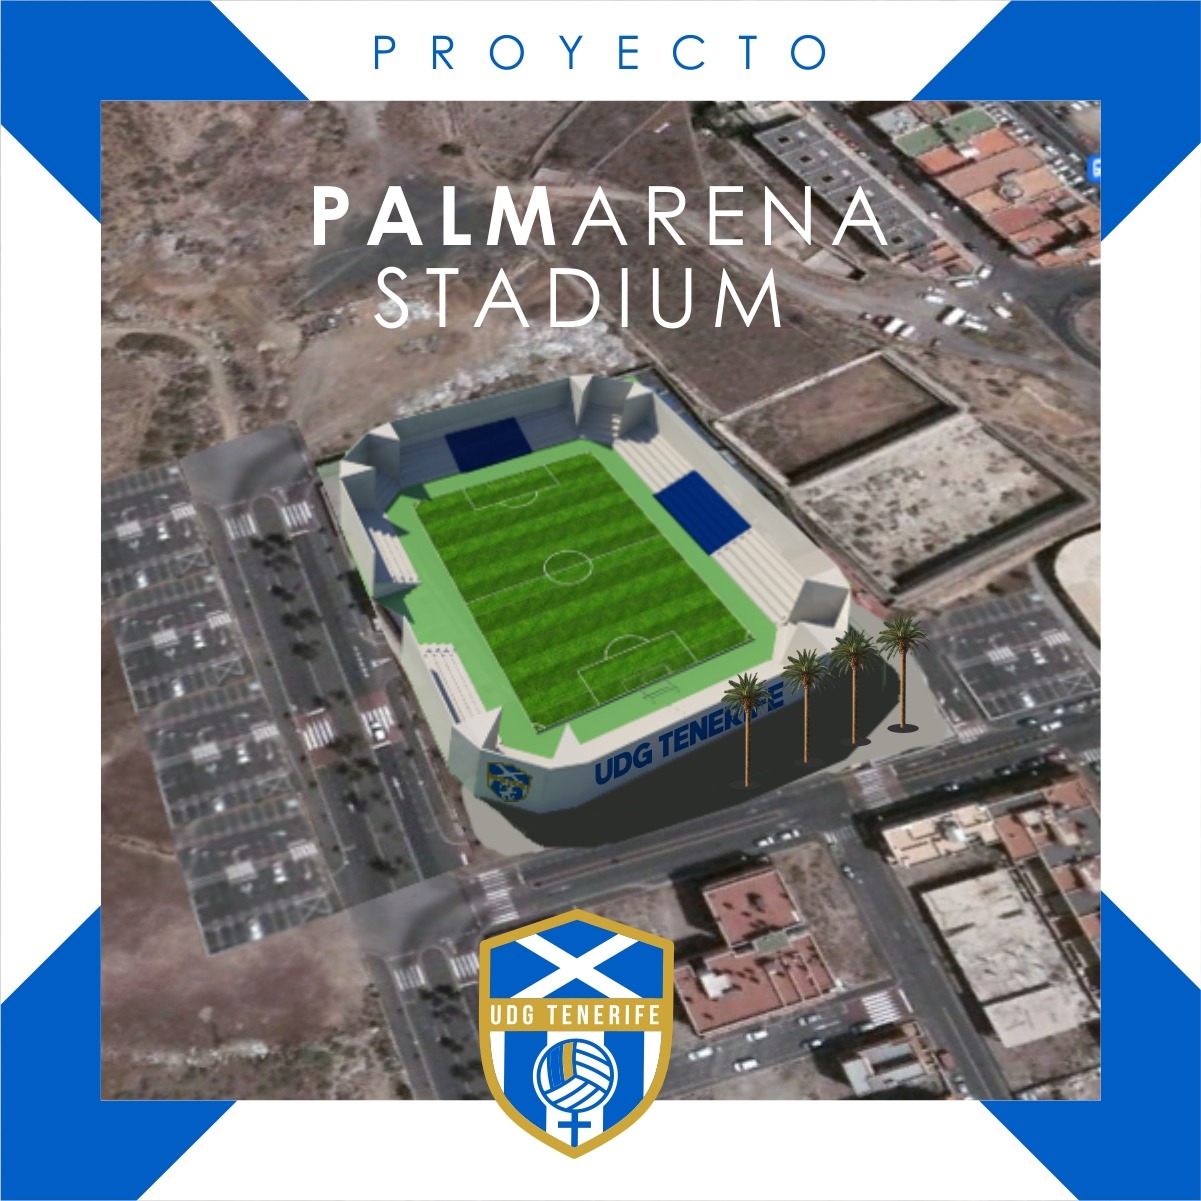 La UDG Tenerife se unió a las inocentadas presentando un supuesto nuevo estadio